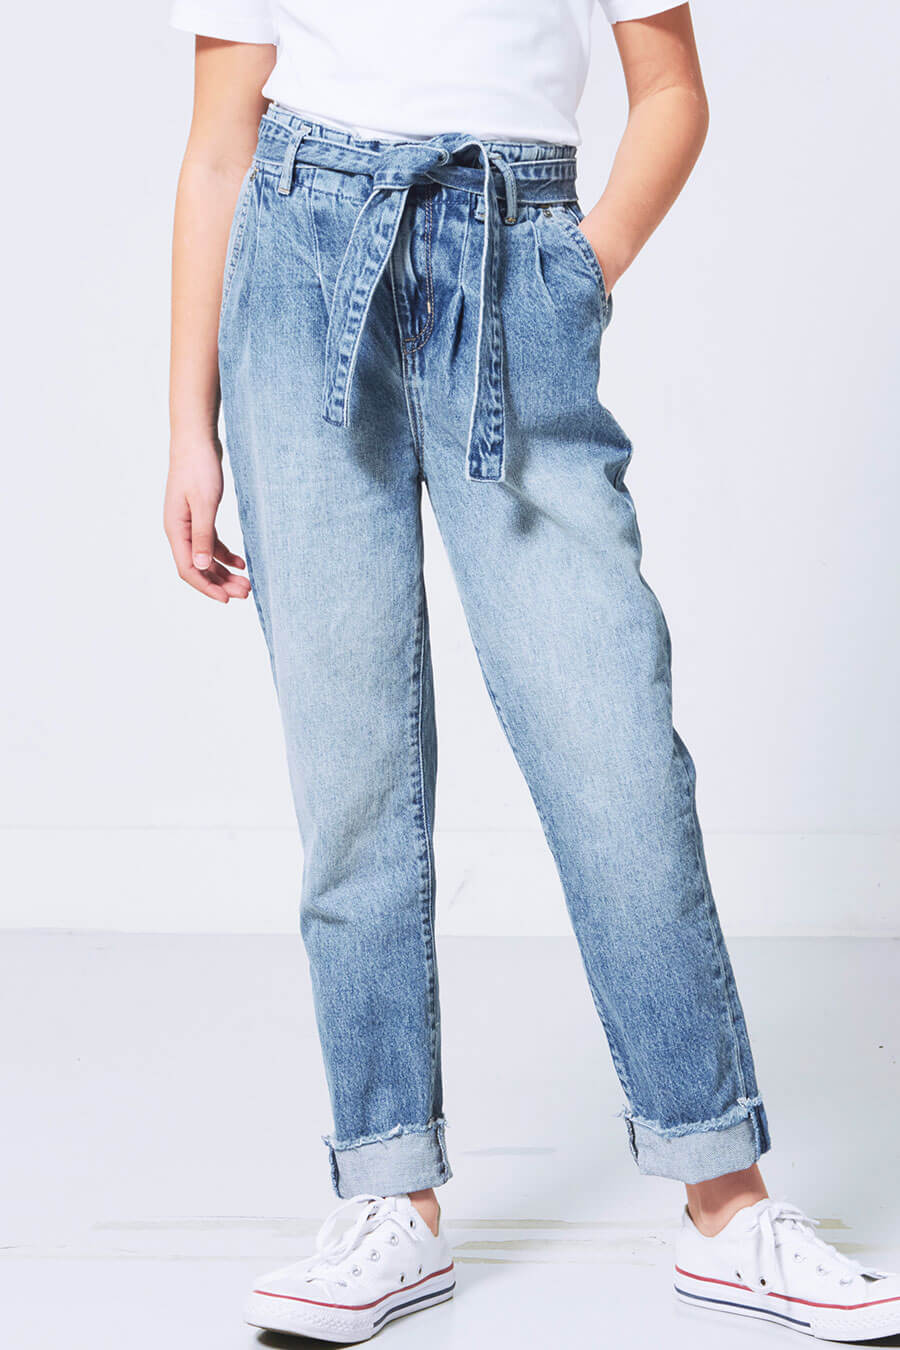 Kae Jr girls Jeans 